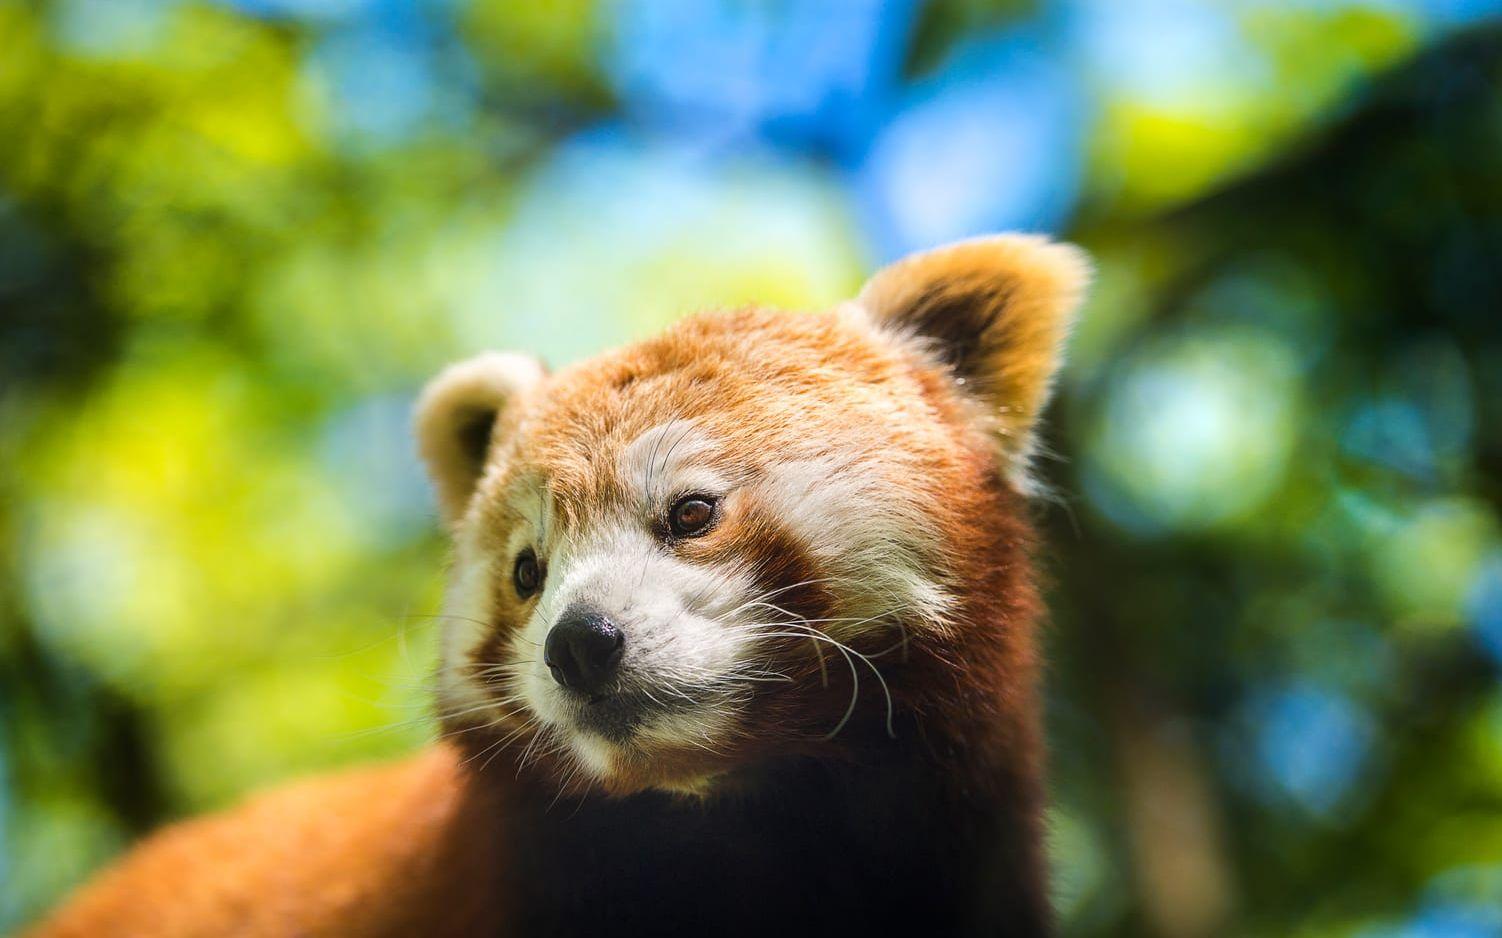 BAMBUÄTARE. Pandan gillar bambu, men eftersom det är en näringsfattig föda står även frukt, rötter, smådjur, gräs och svampar på djurens meny.